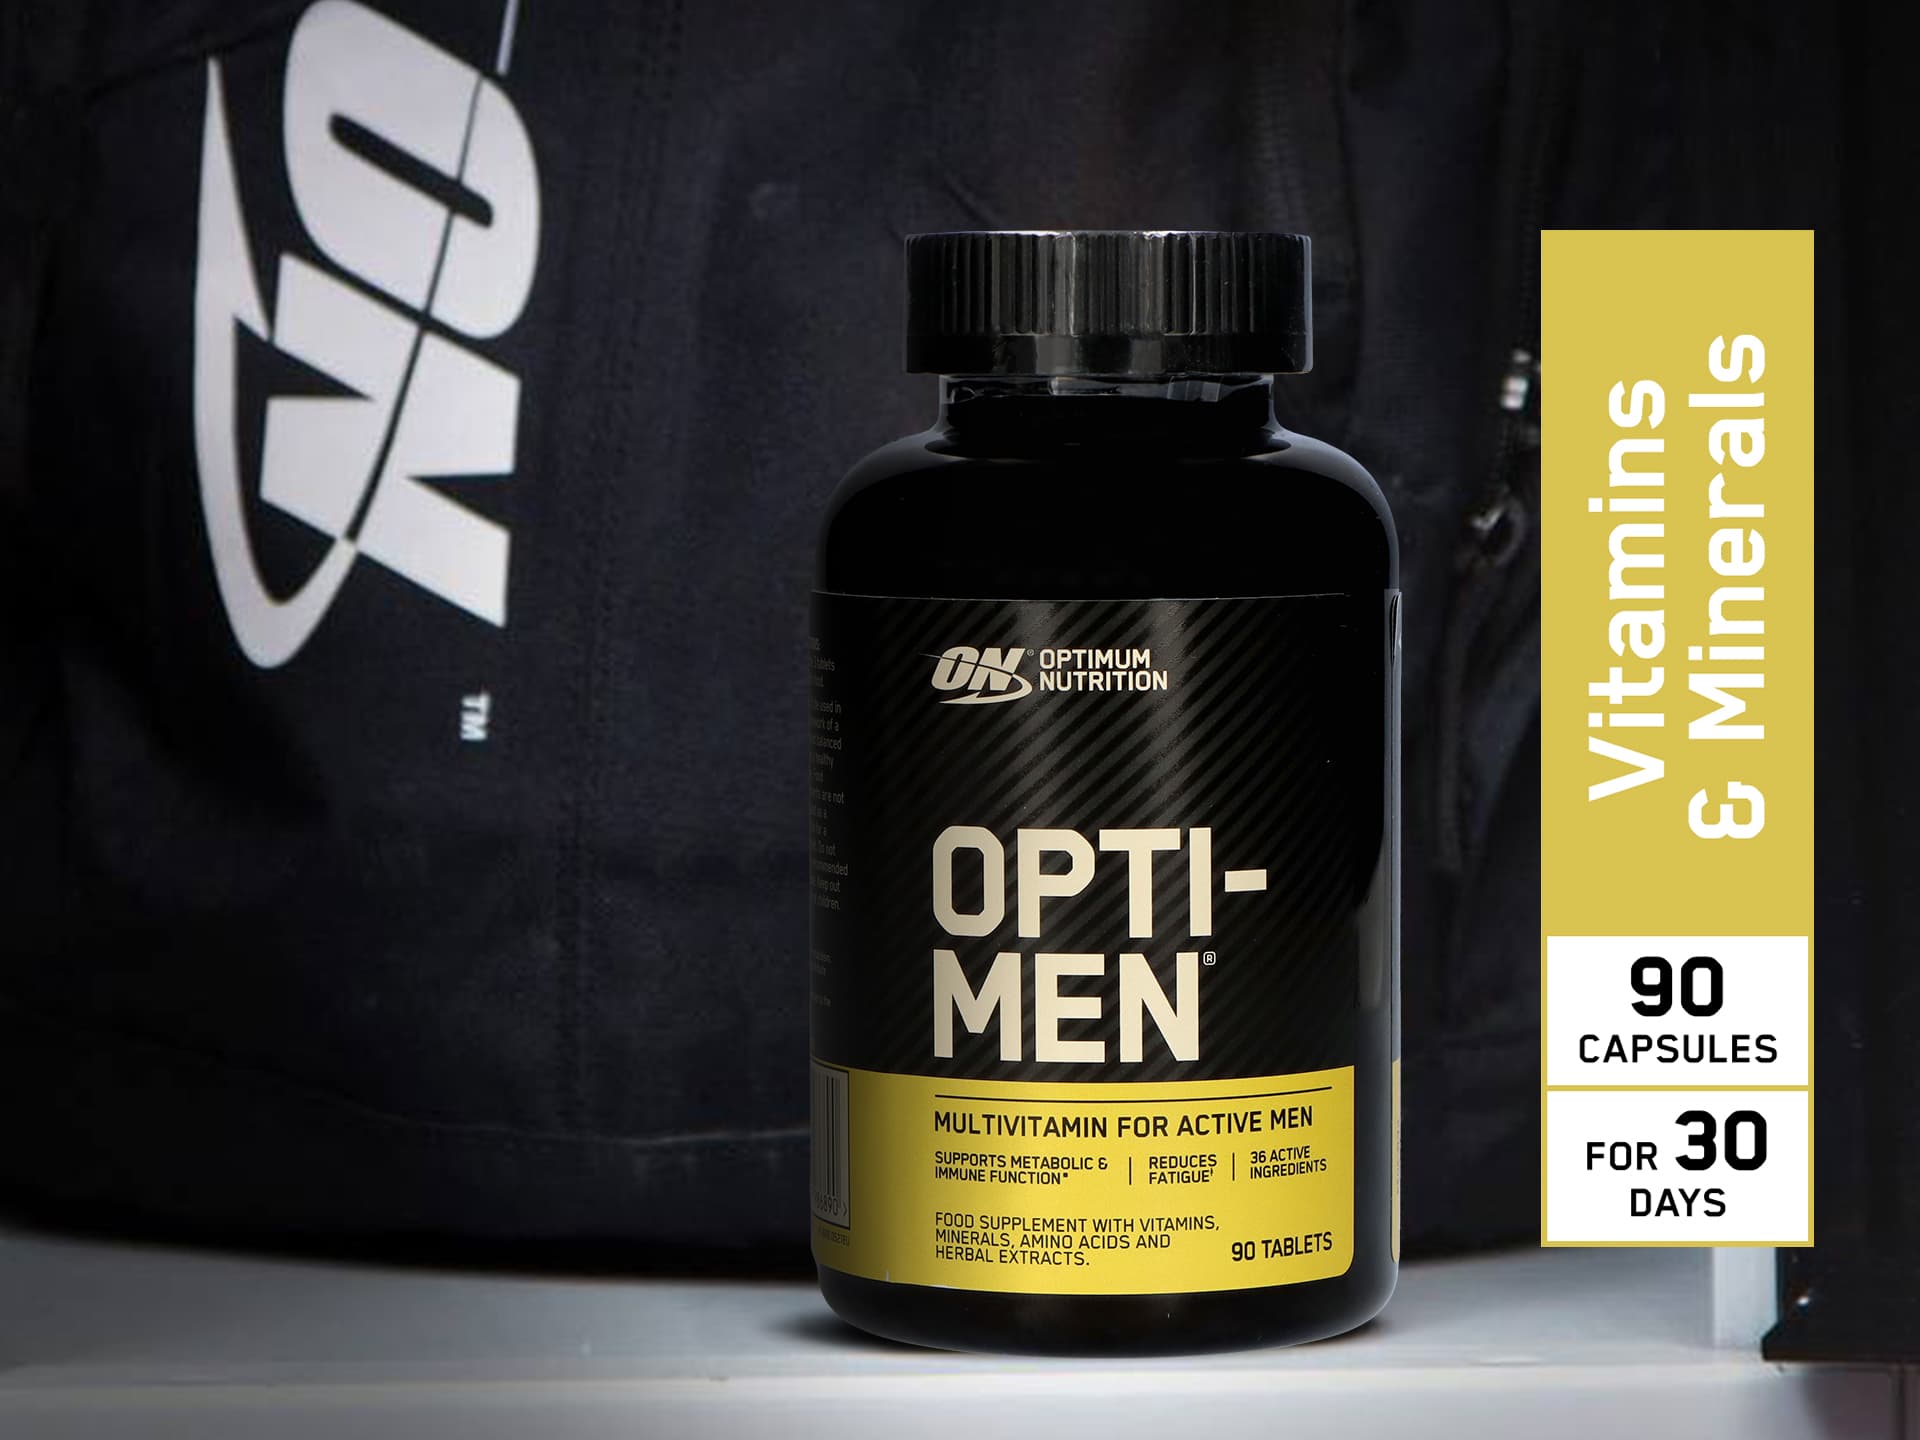 ON - witaminy dla mężczyzn - Opti Men